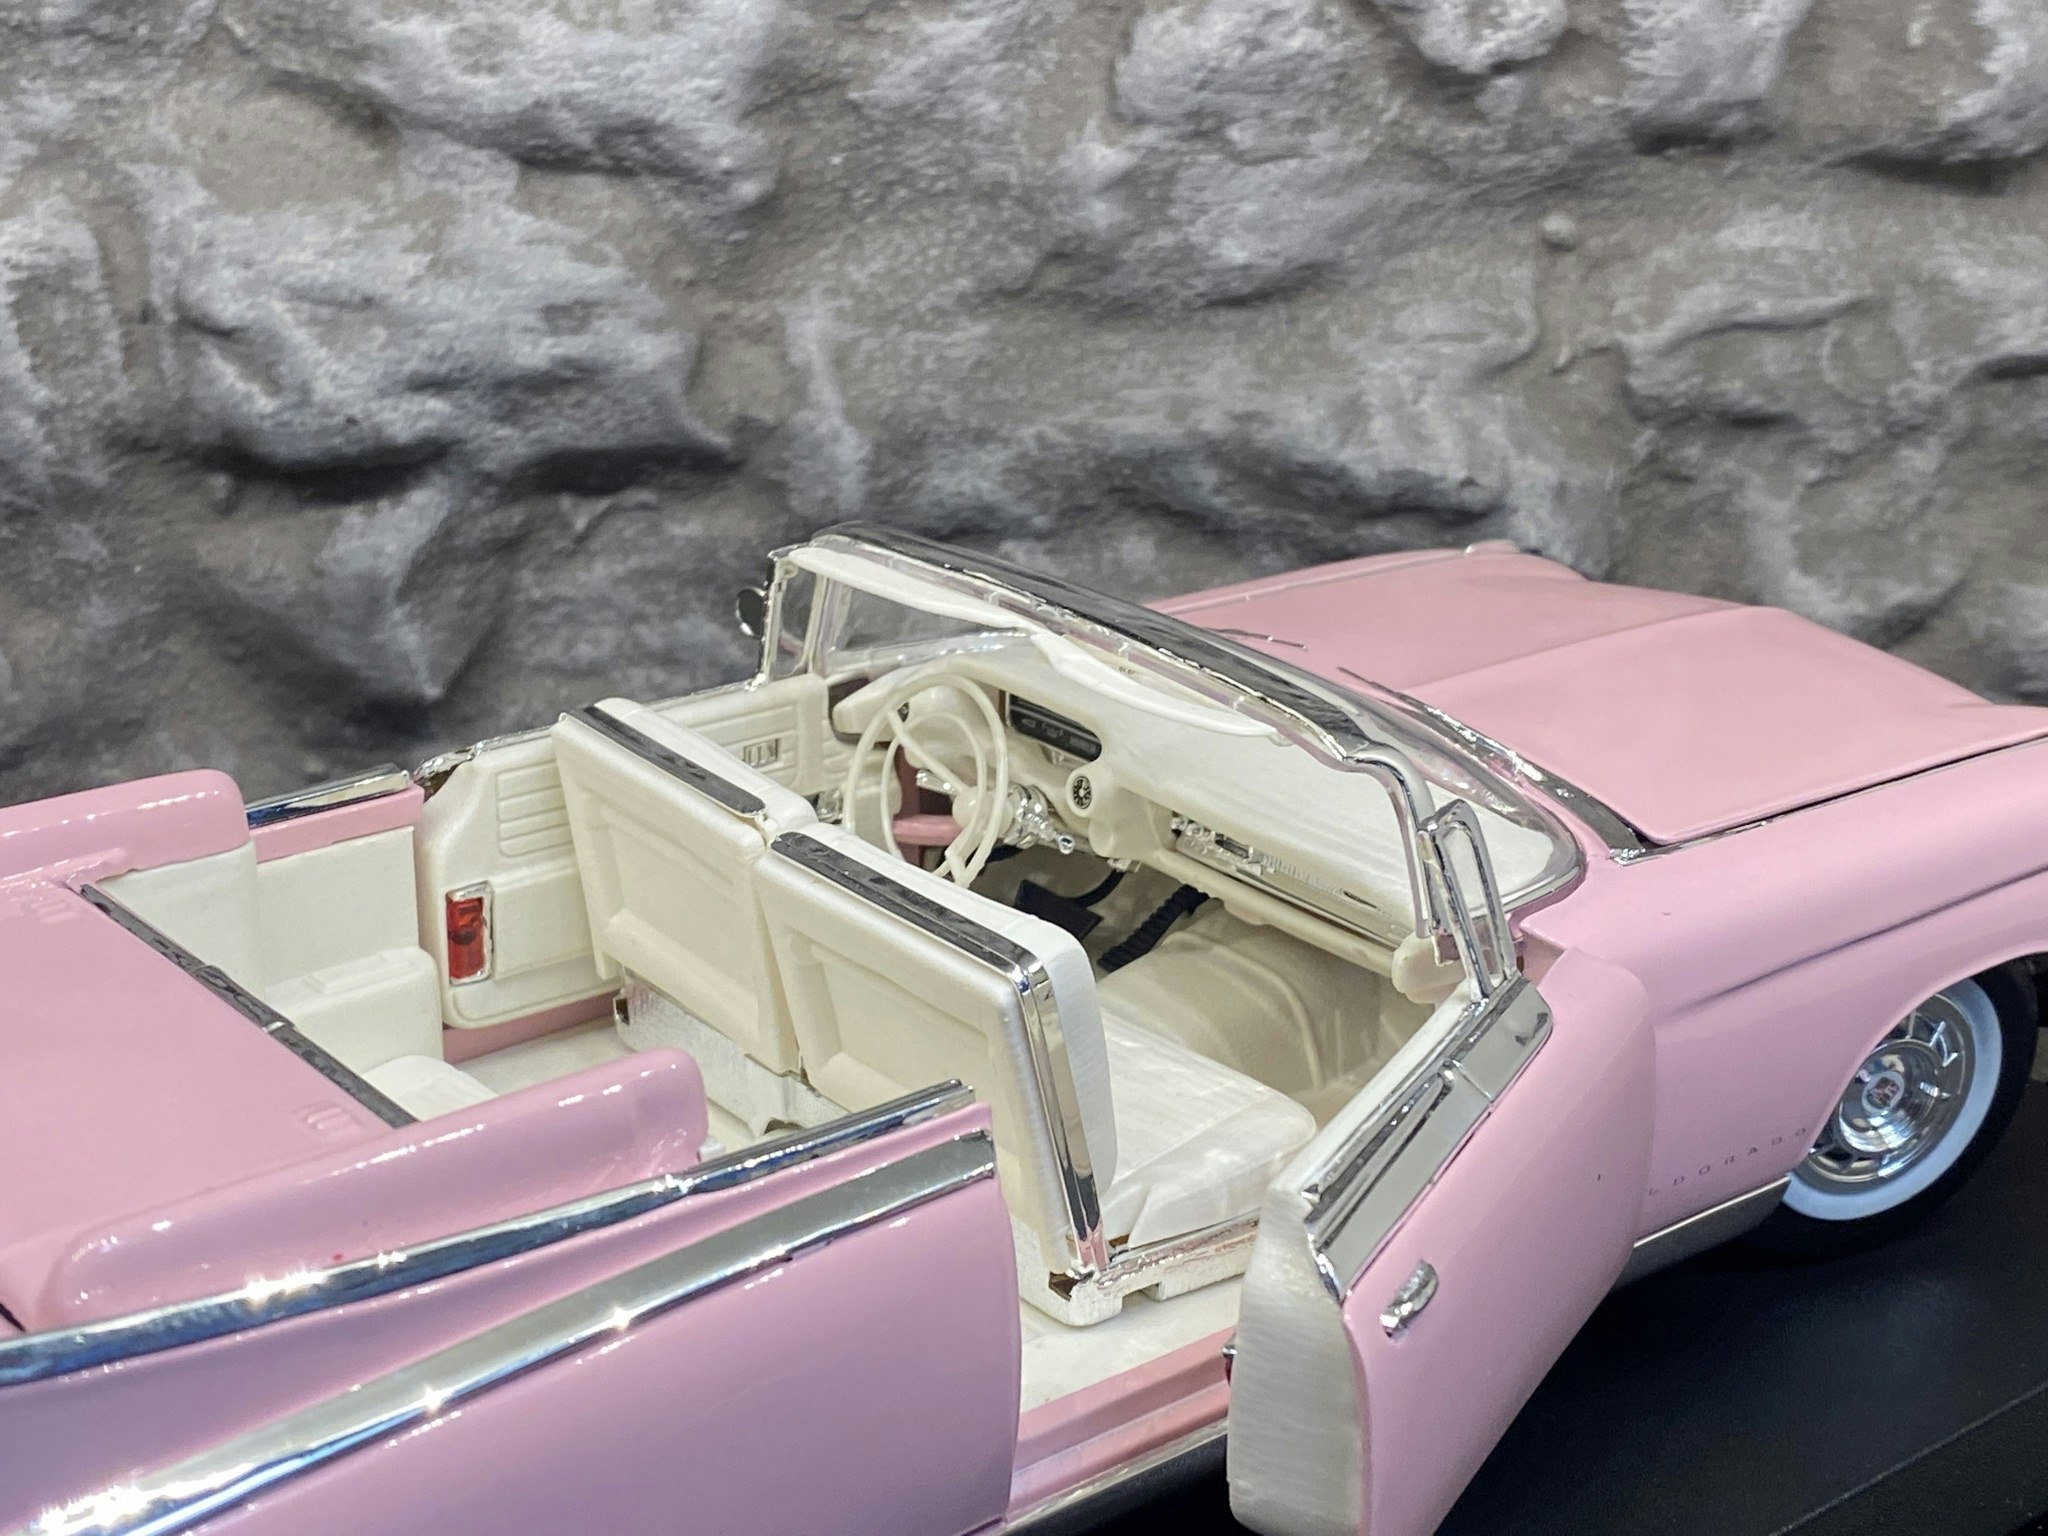 Skala 1/18 Cadillac Eldorado Biarritz 59' fr Maisto Premiere Edition